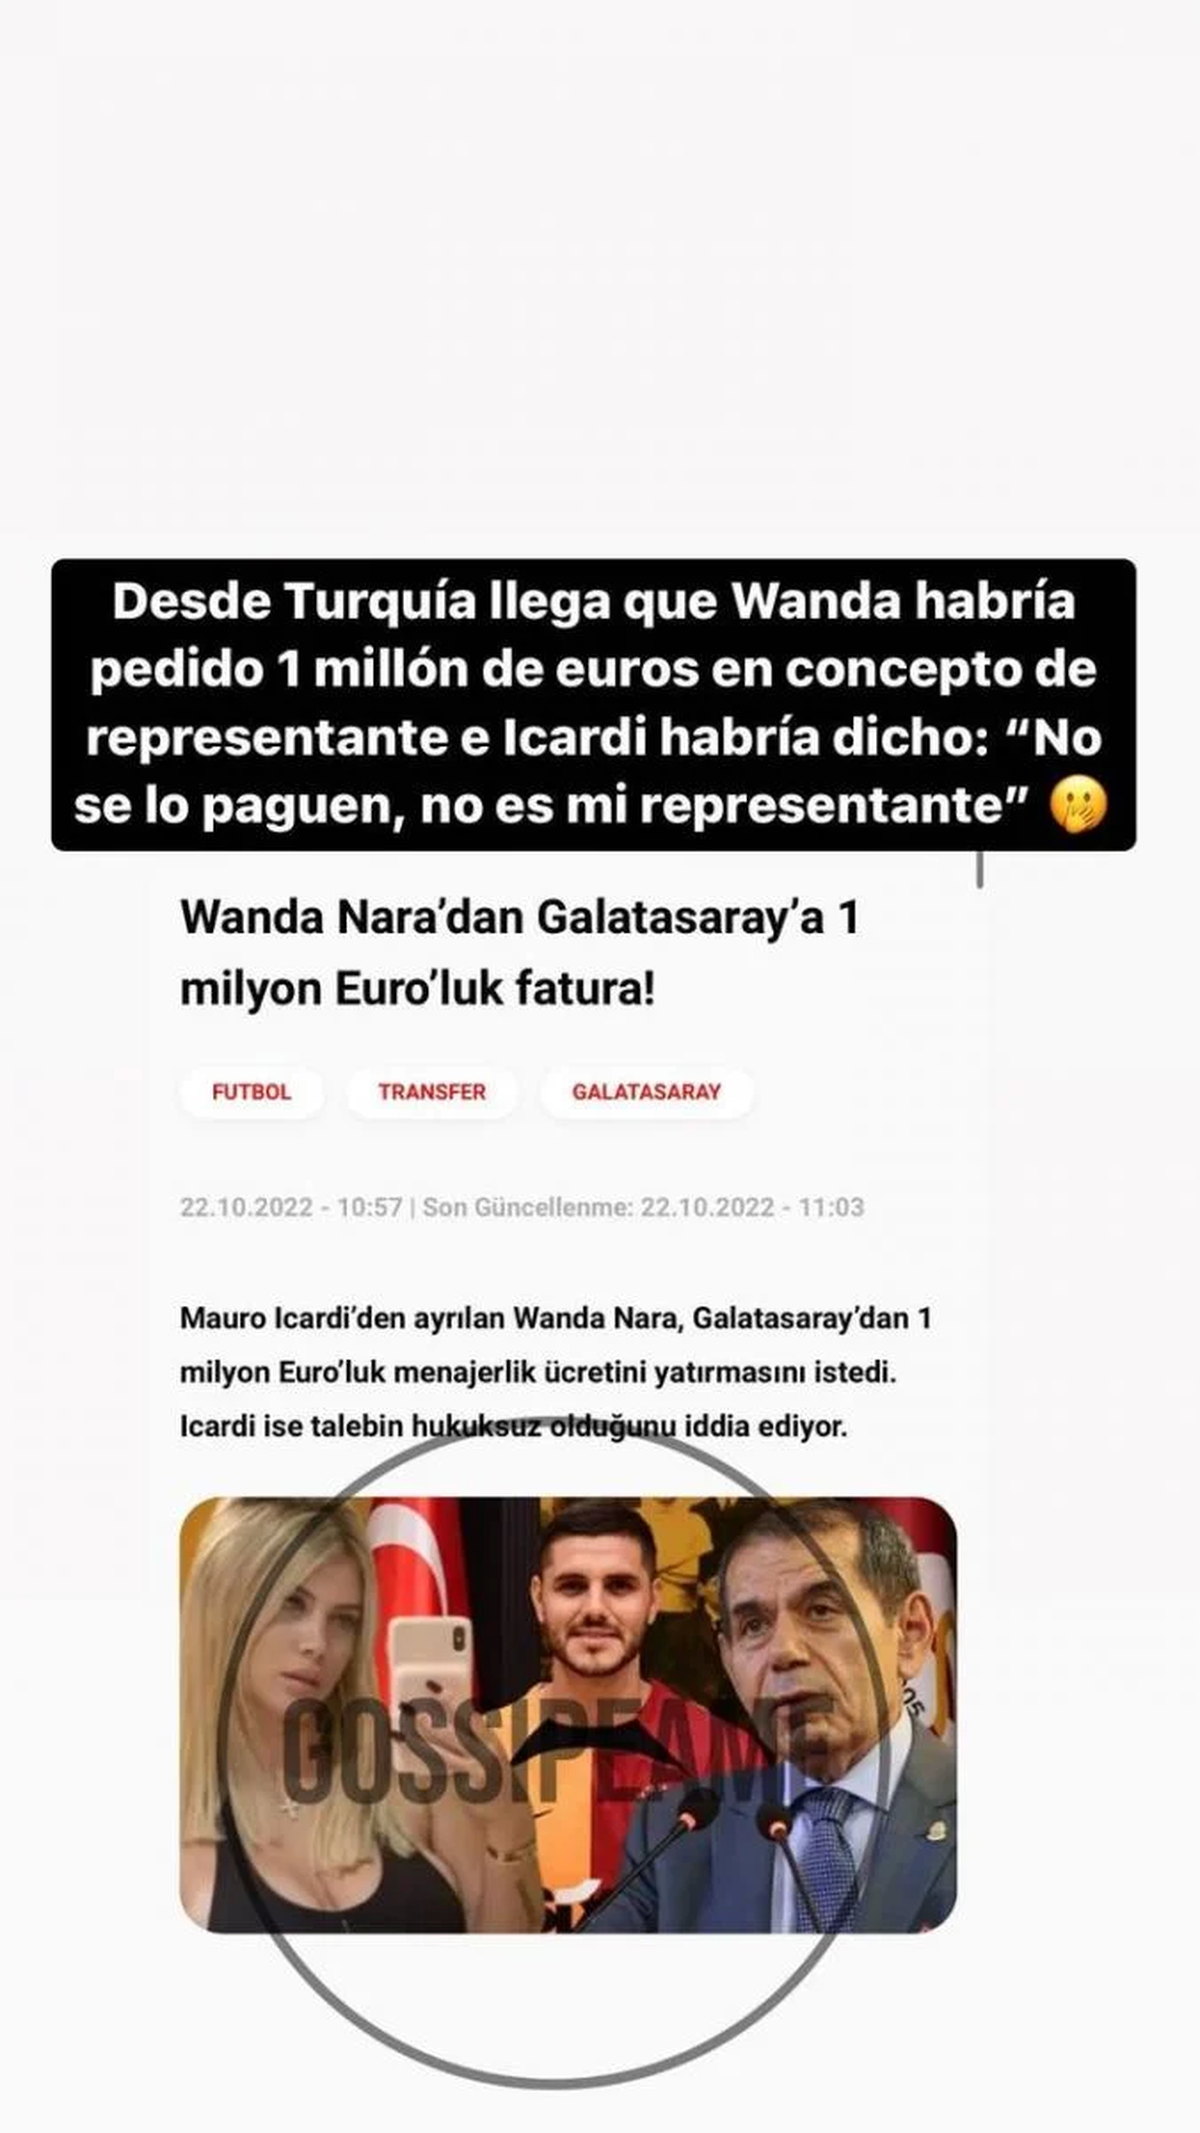 VENGANZA MILLONARIA: Mauro Icardi rescindió el contrato con Wanda Nara e hizo una fuerte advertencia: “No le paguen, ya no es mi representante”